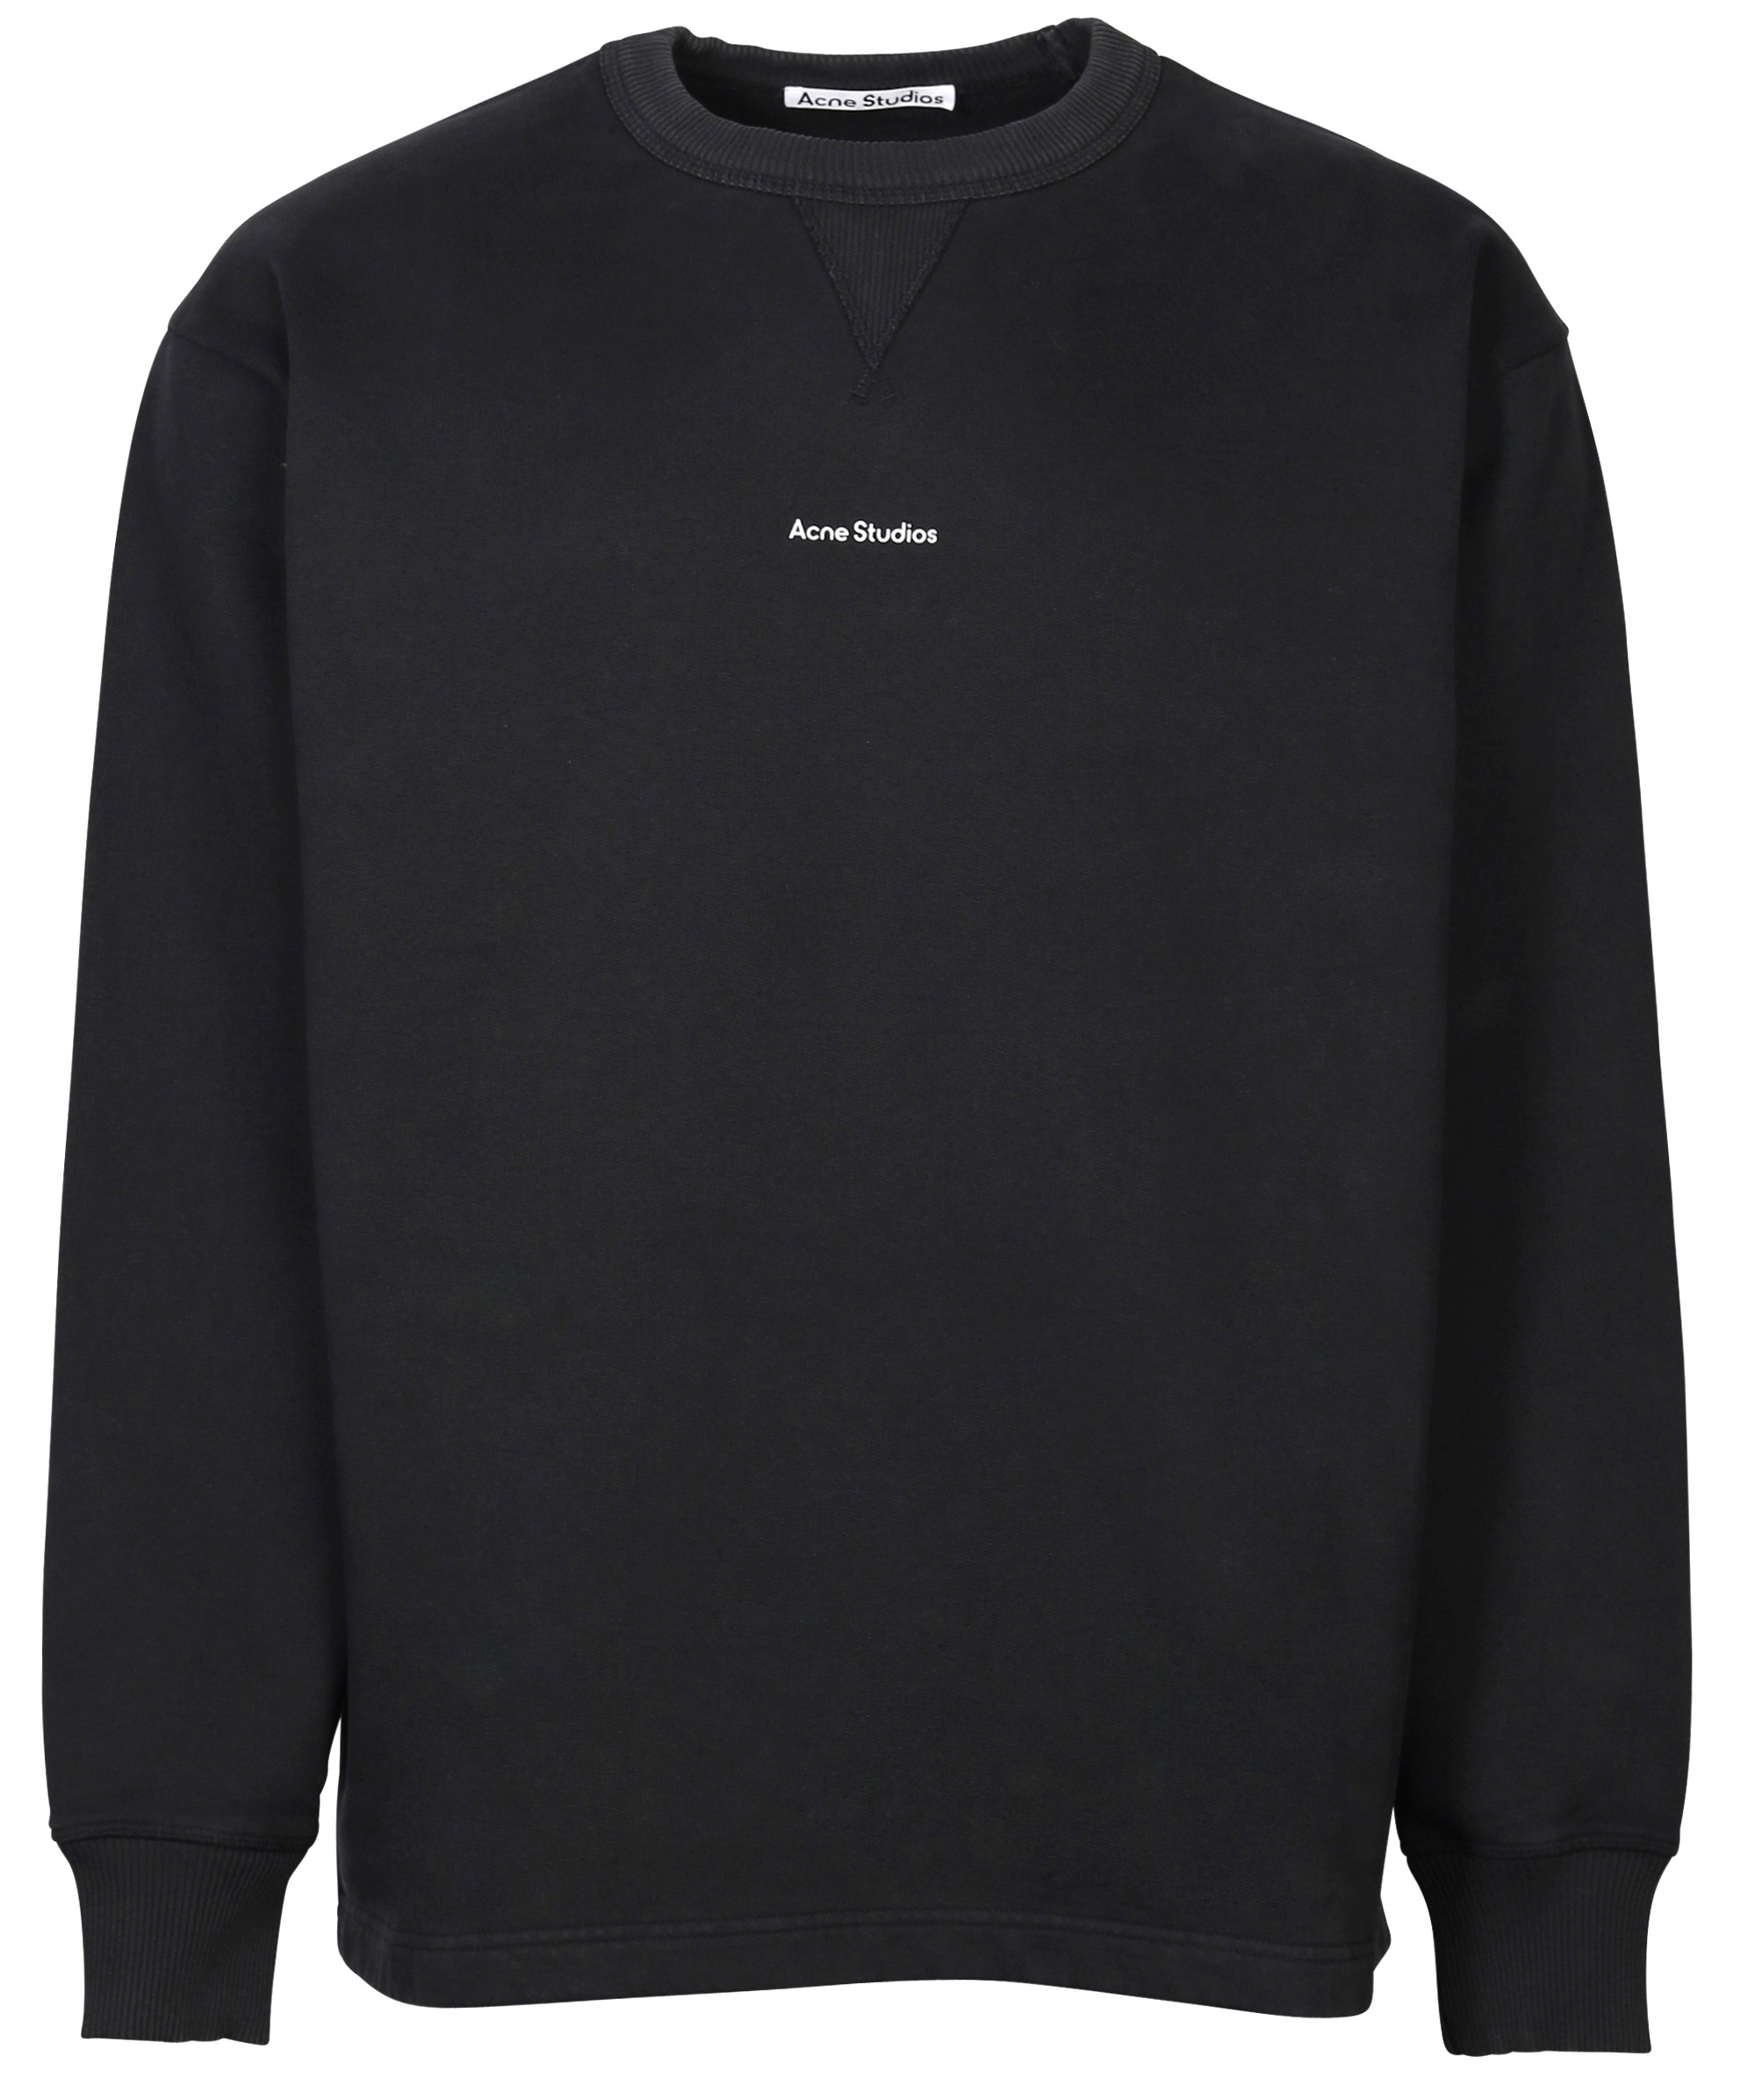 ACNE STUDIOS Stamp Oversize Sweatshirt in Black S